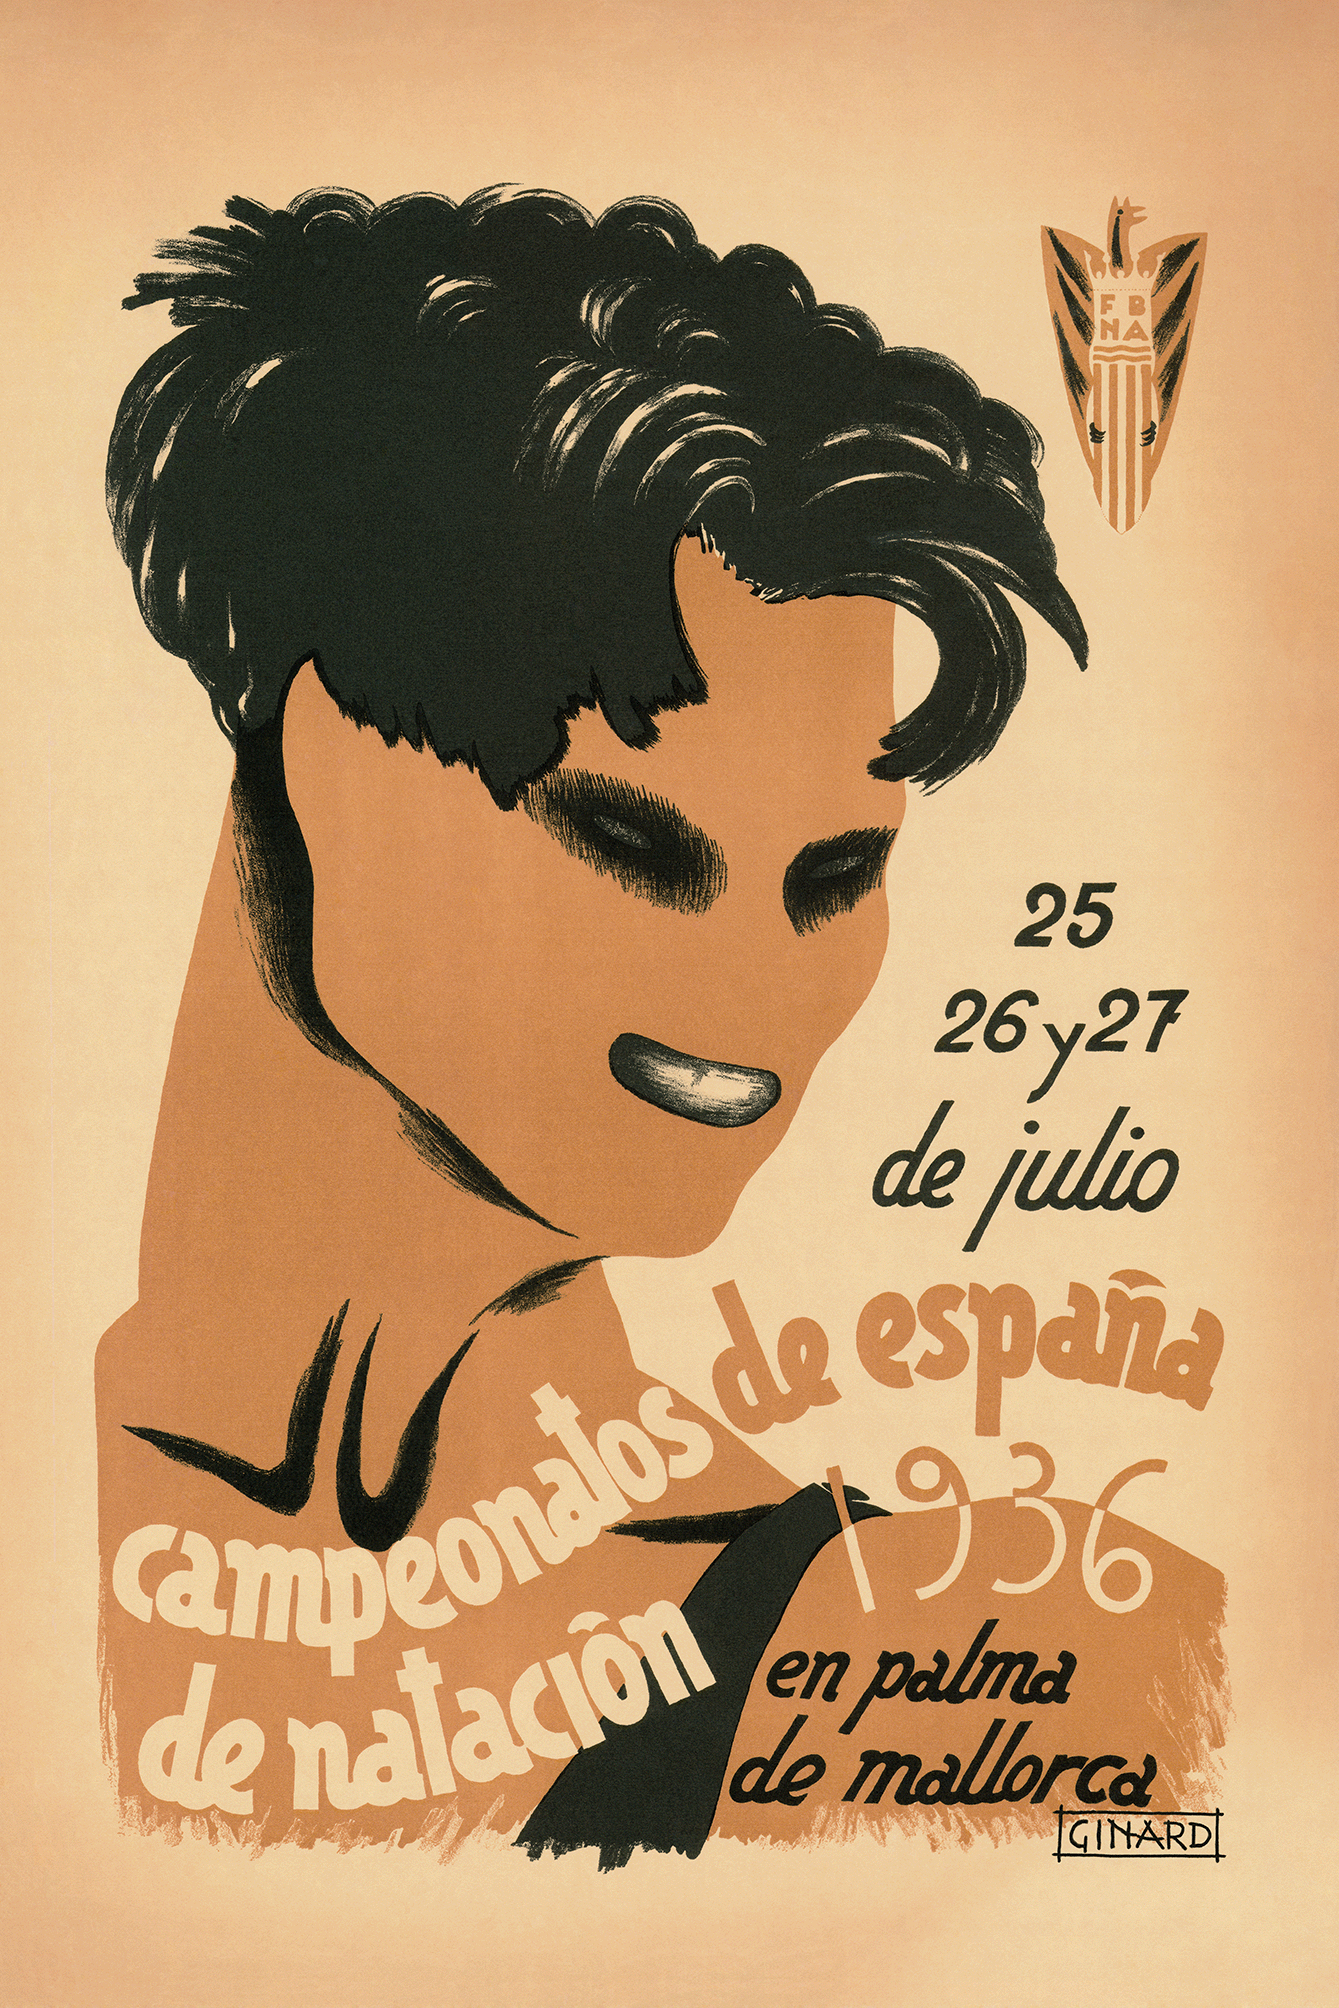 Campeonatos de España de Natación, Palma de Mallorca, 1936.